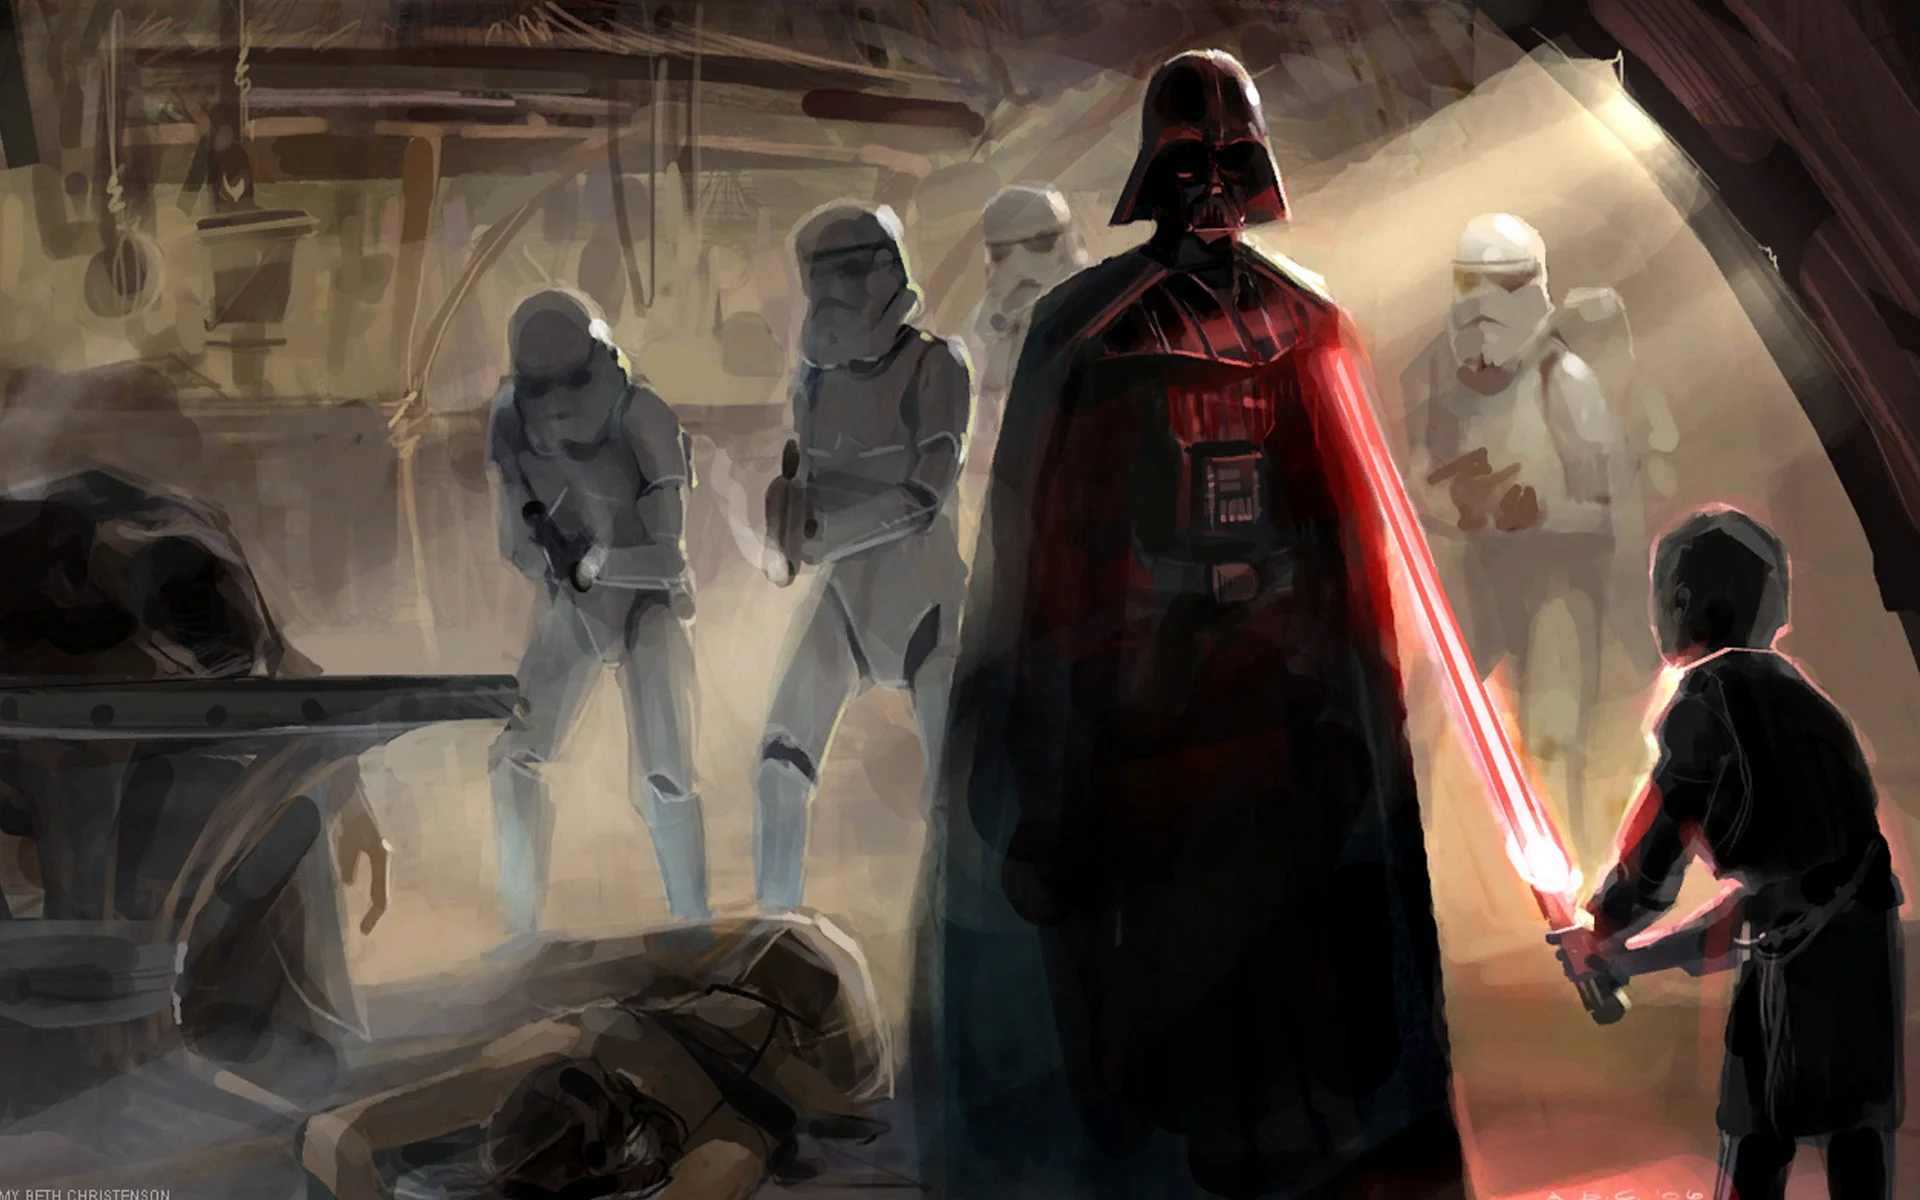 Star Wars Darth Vader Art Wallpaper